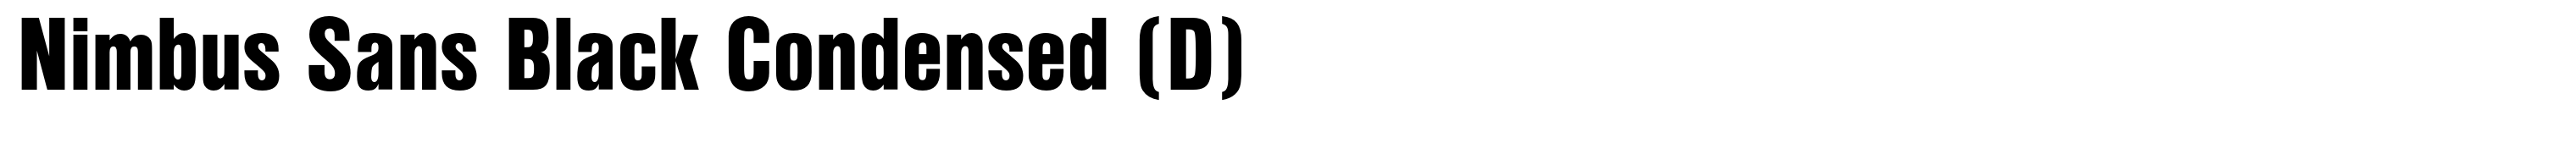 Nimbus Sans Black Condensed (D)